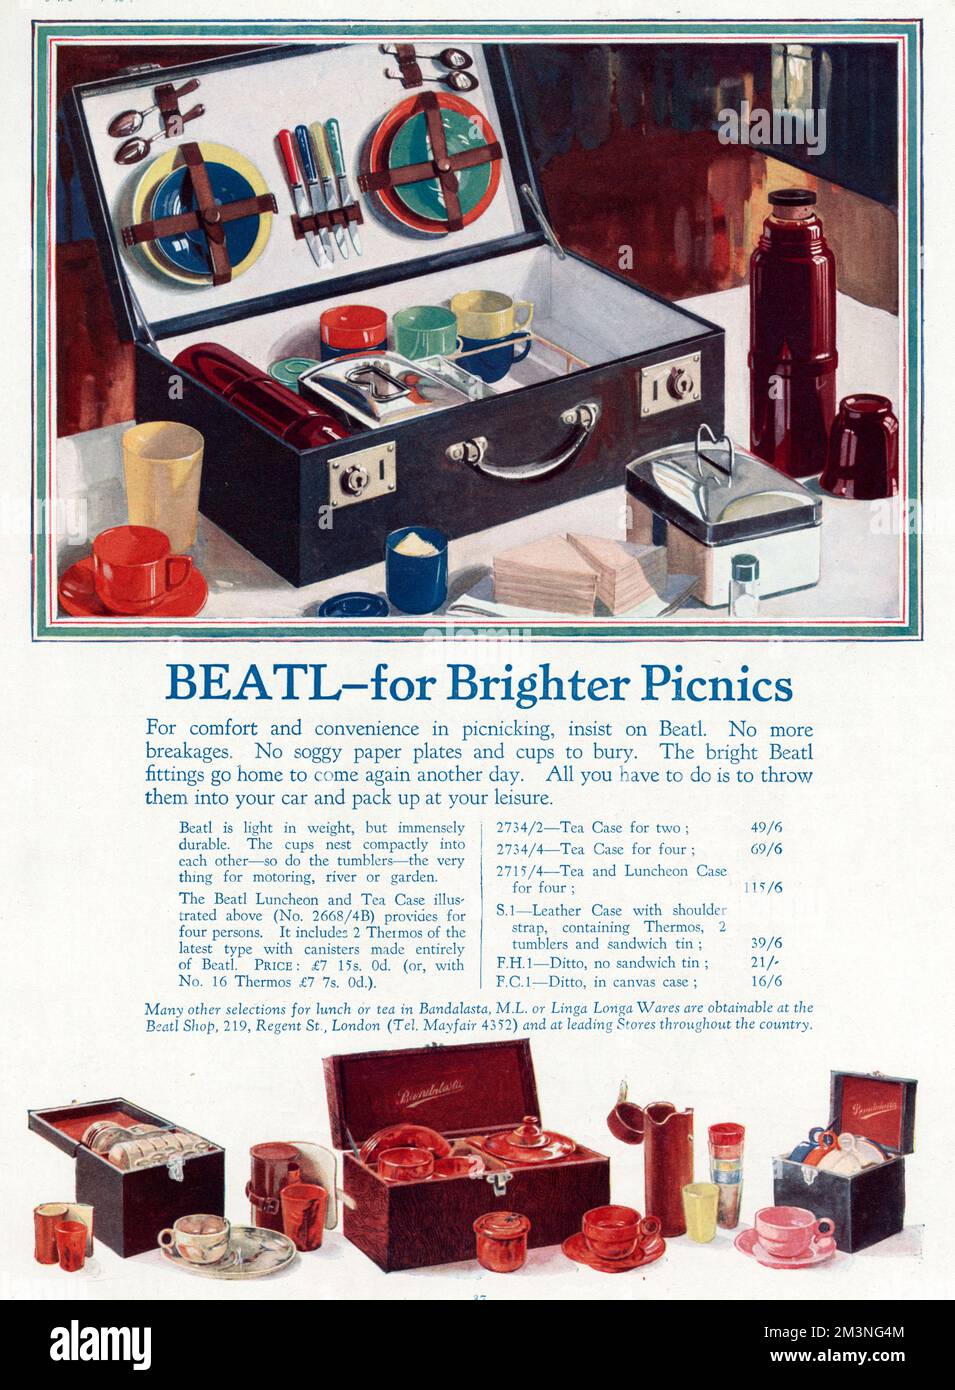 Keine Brüche, keine feuchten Pappteller und Becher mehr. Heller und farbenfroher „Beatl“ Picknickkorb. Datum: 1930 Stockfoto